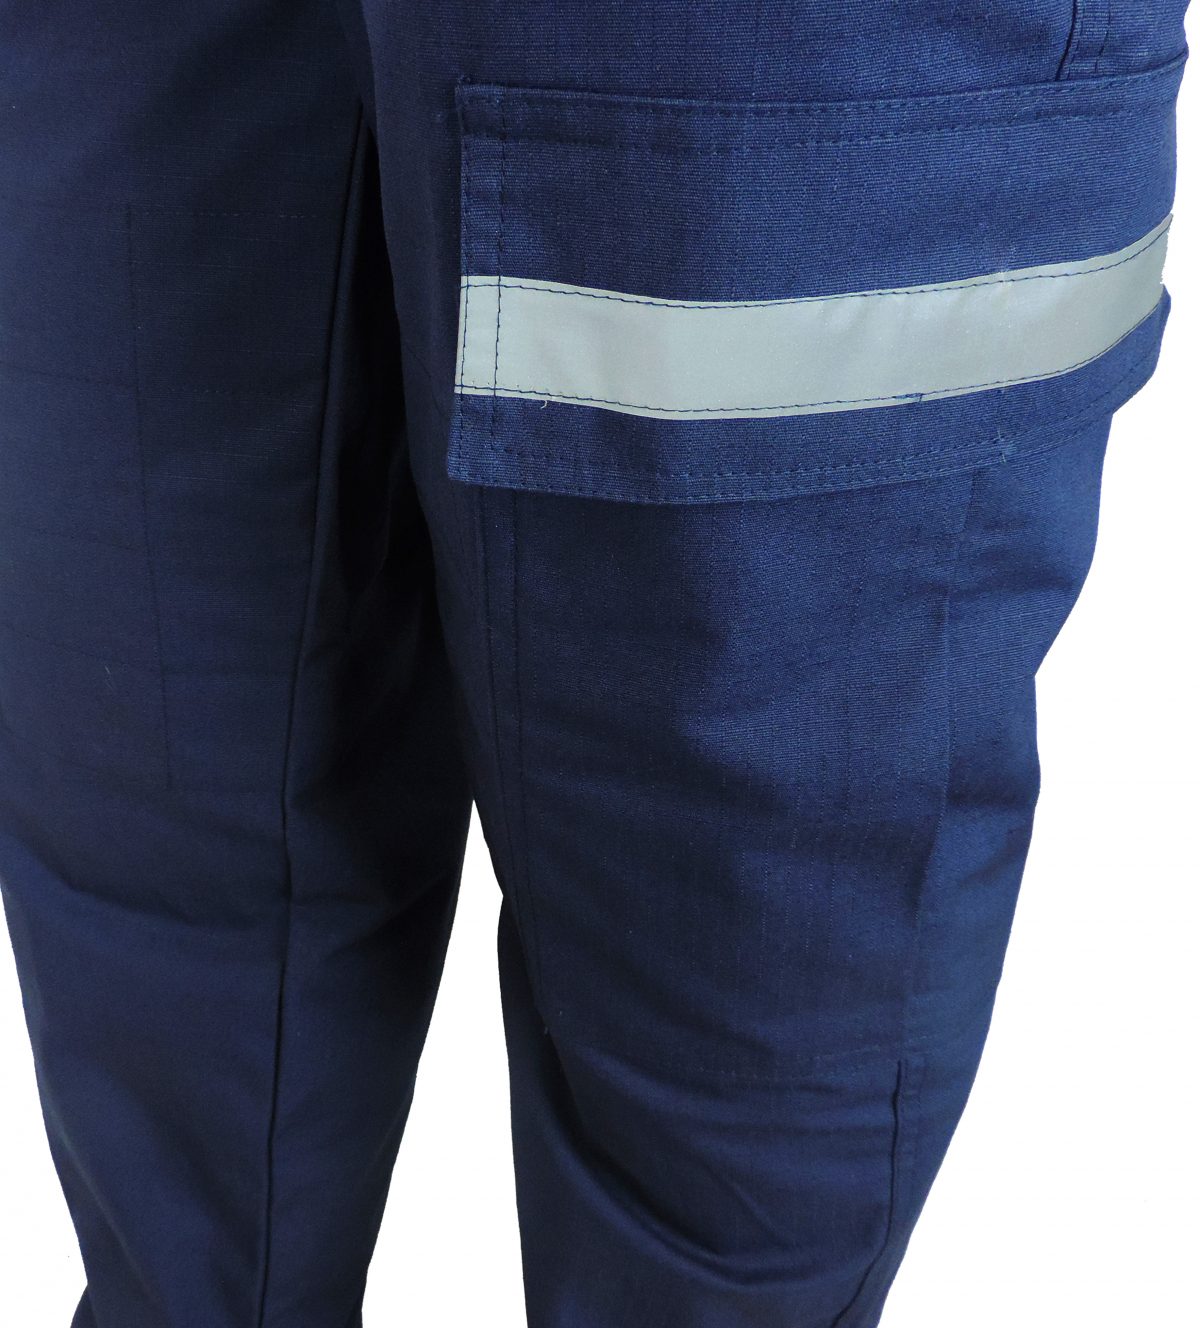 calca tatica com refletivo azul 1 scaled - Couro Art Bombeiro Civil, Saúde e Tático